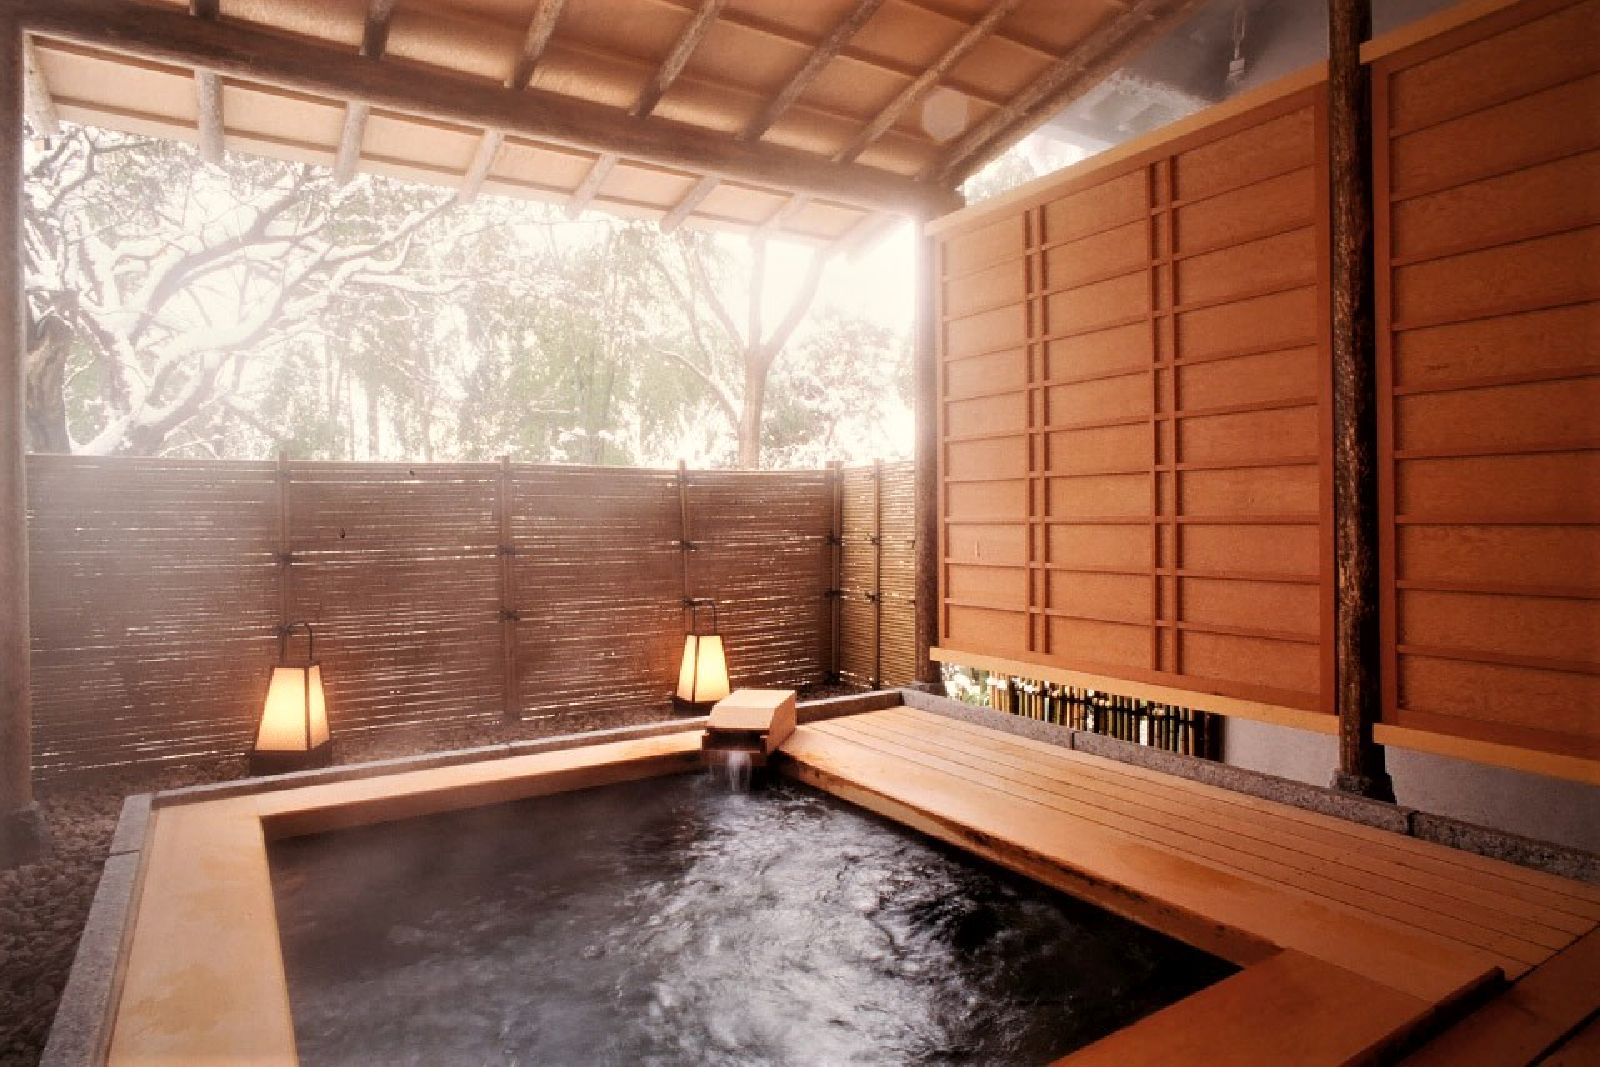 Onsen hot spring bath at Beniya Mukayu in Yamashiro Japan